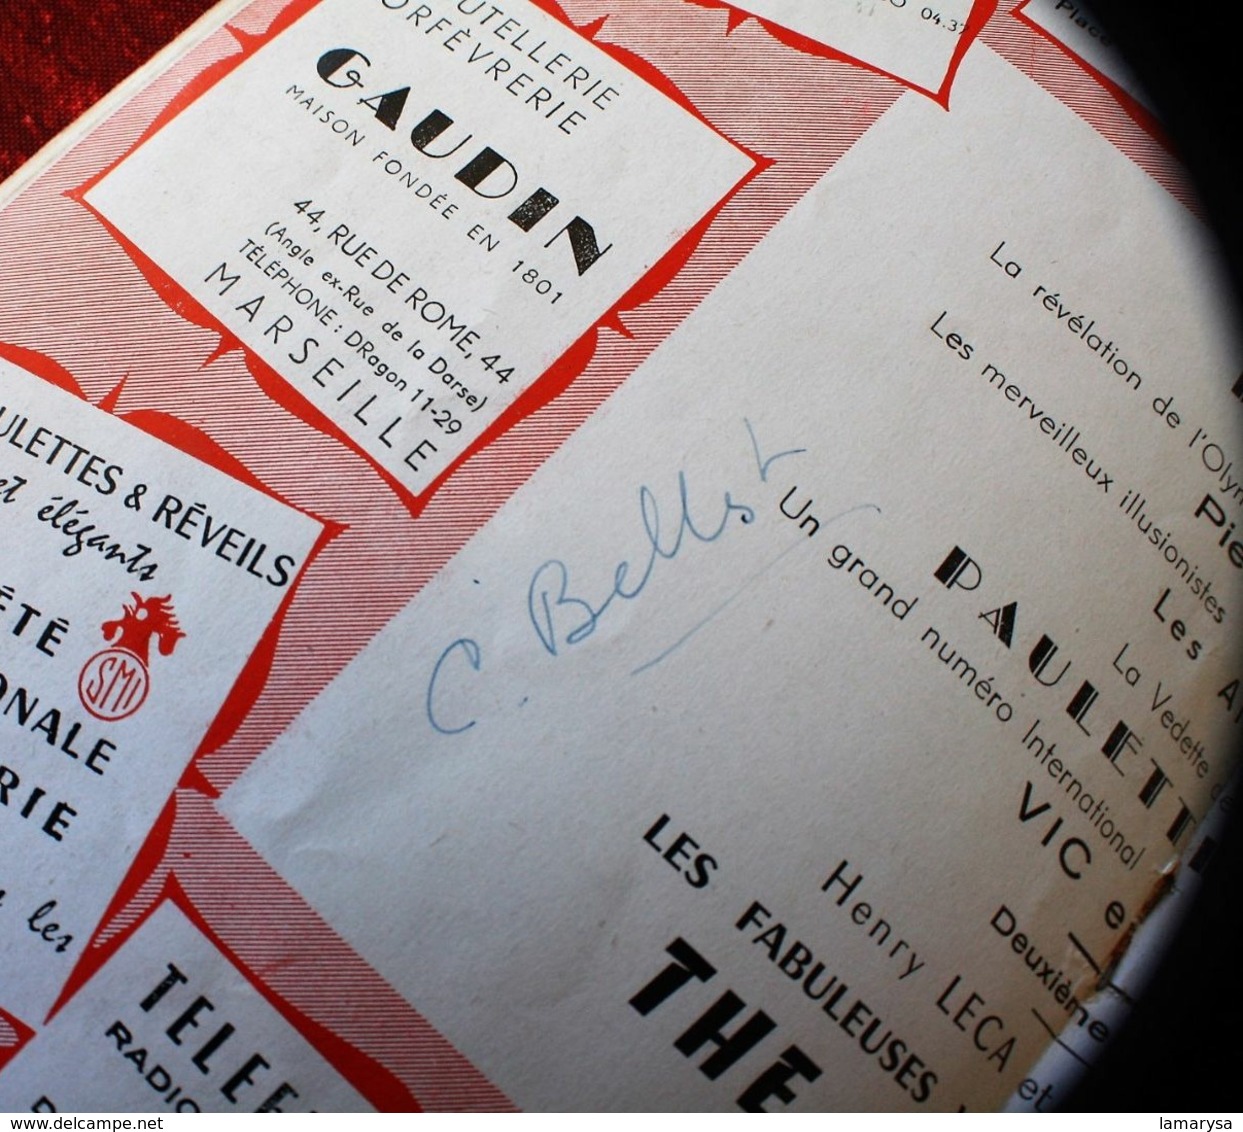 FABULEUX" THE PLATTERS " 2+1 VÉRITABLES AUTOGRAPHE DÉDICACE-OPÉRA MARSEILLE 1957-PIERRE PERRET-PAULETTE ROLLIN- - Programme